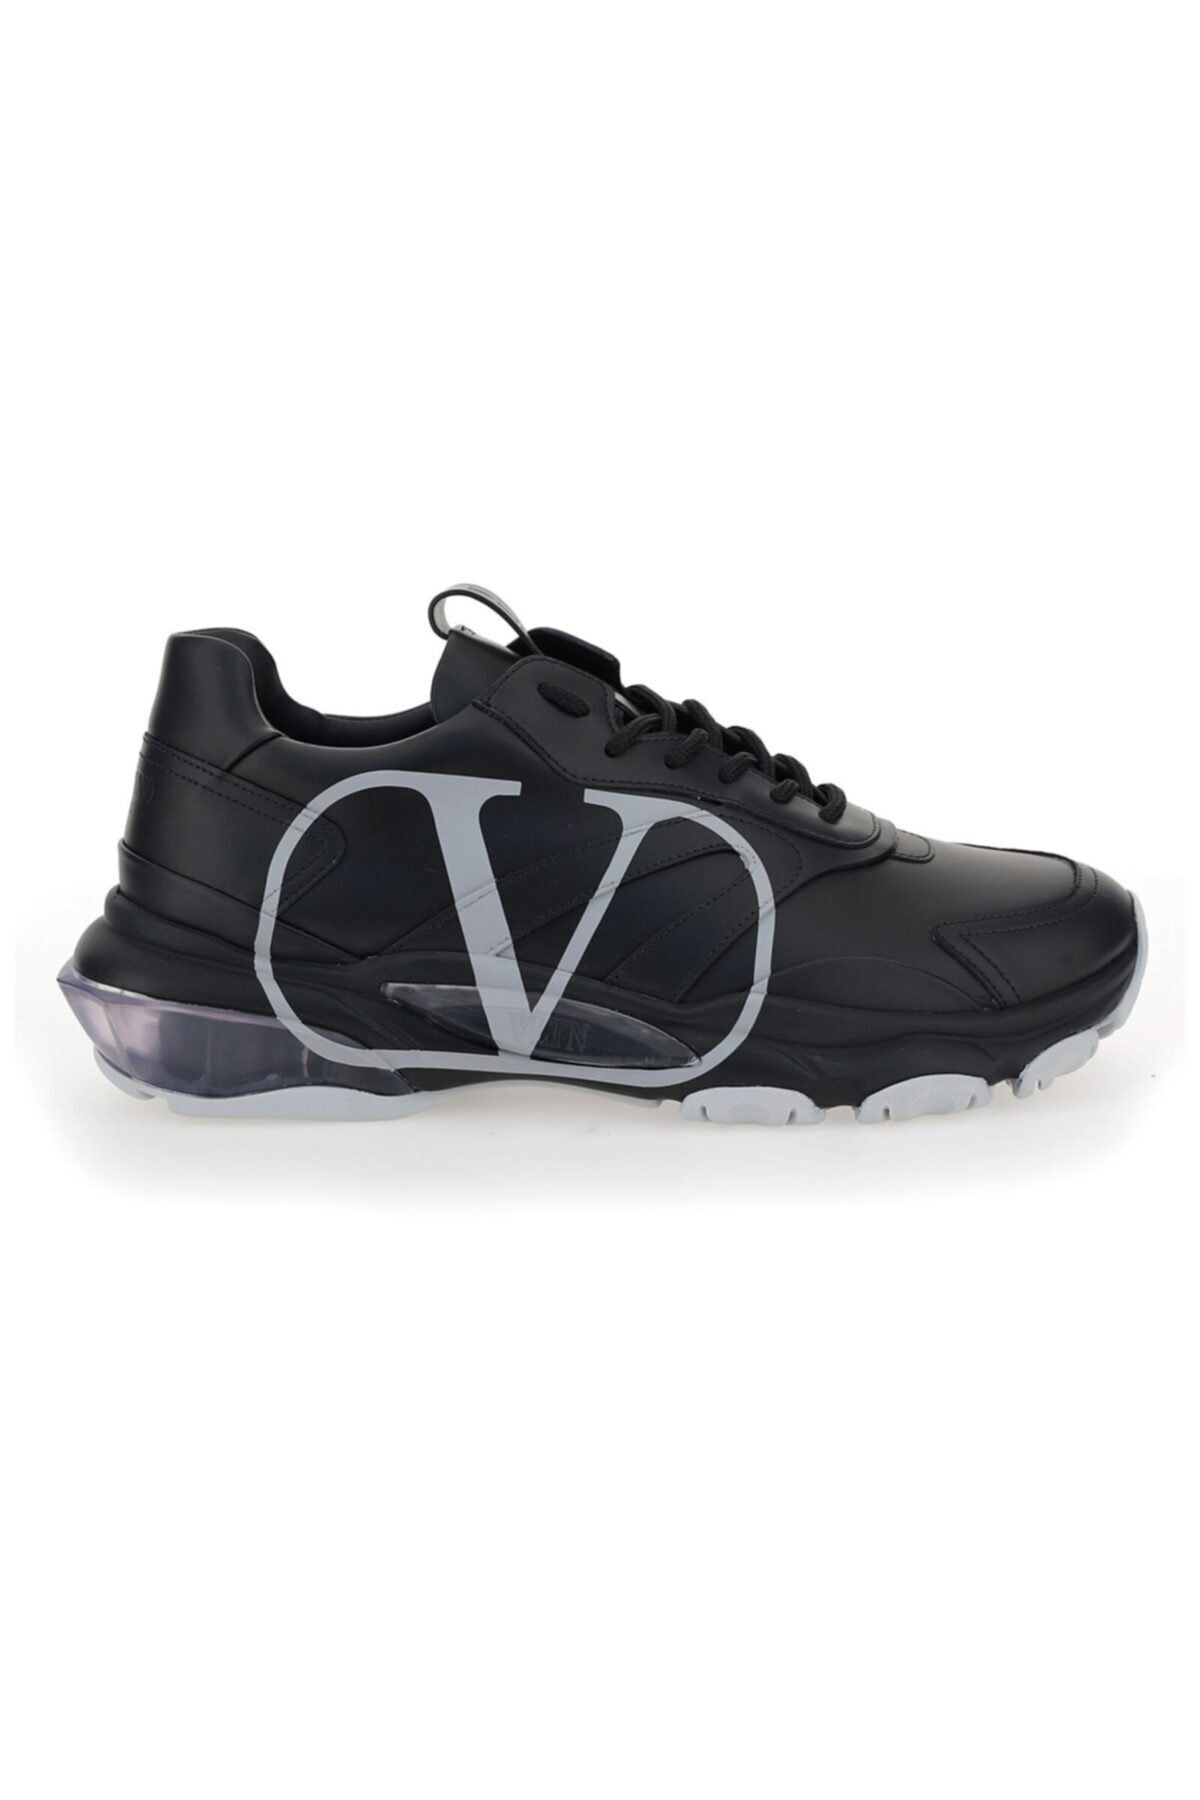 Valentino Garavani Erkek Siyah Casual Ayakkabı